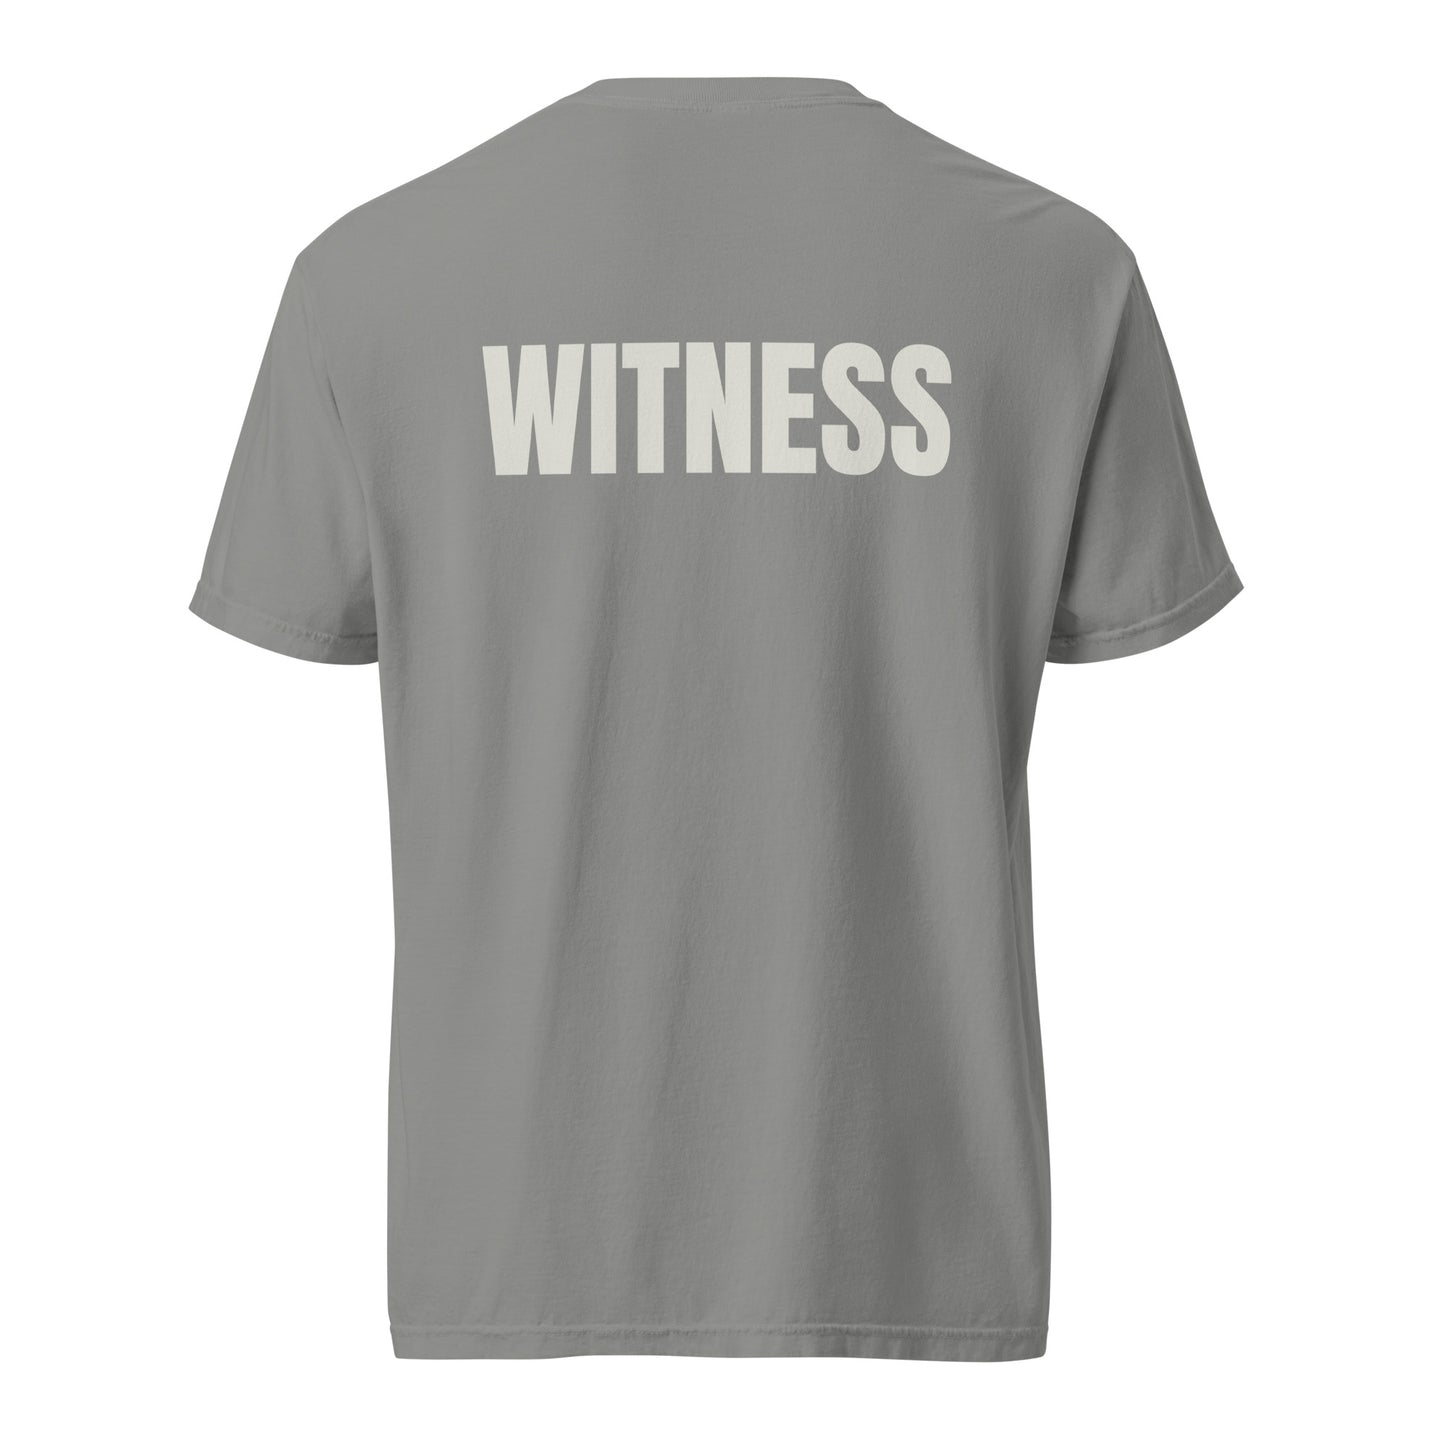 WITNESS - Unisex garment-dyed heavyweight t-shirt